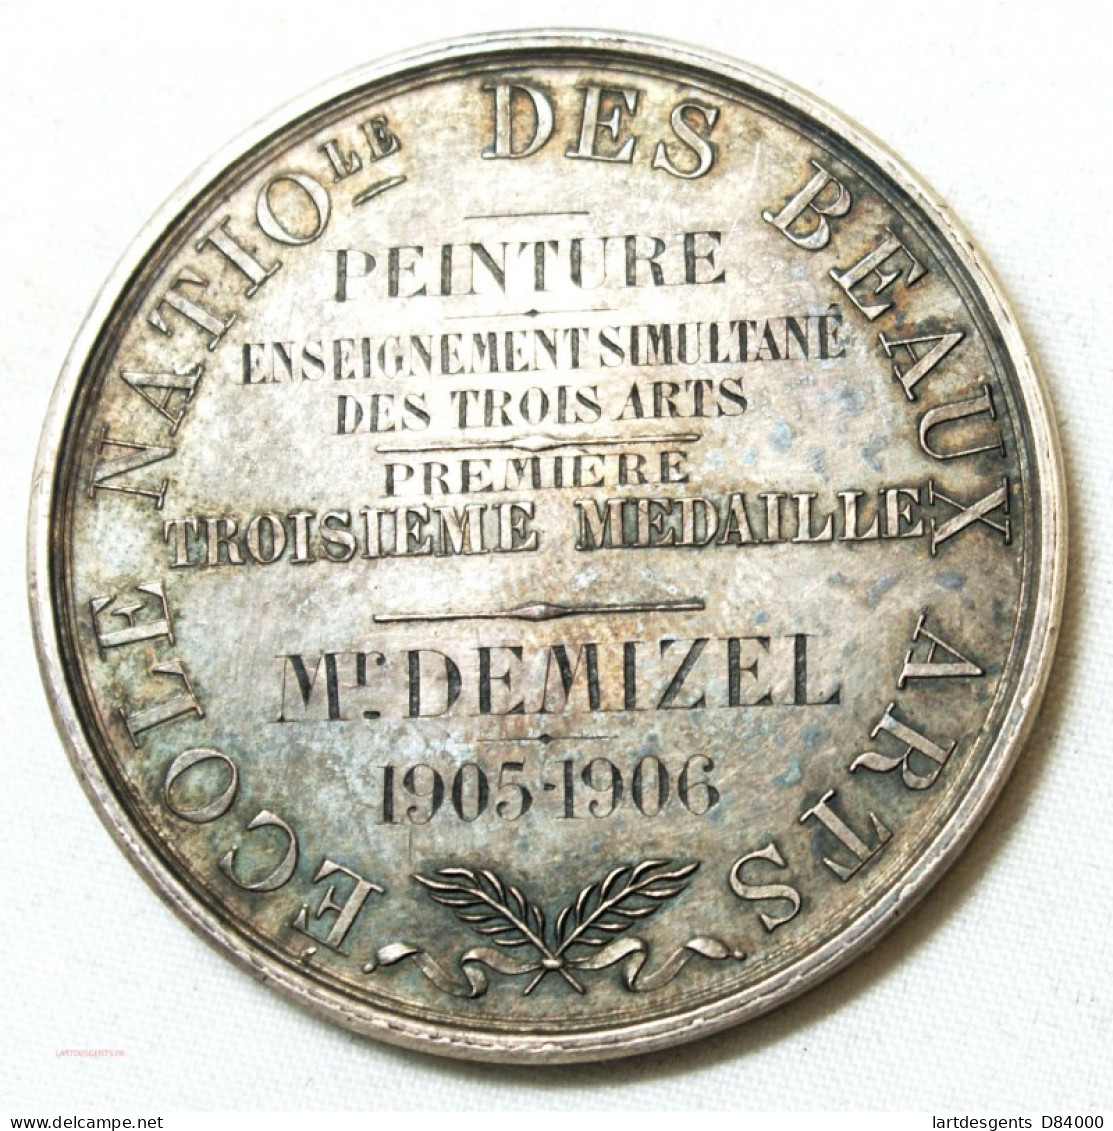 MEDAILLE Ecole Des Beaux Arts Décernée à M. DEMIZEL 1905-06 Par E. GATTEAUX. F. - Professionali / Di Società